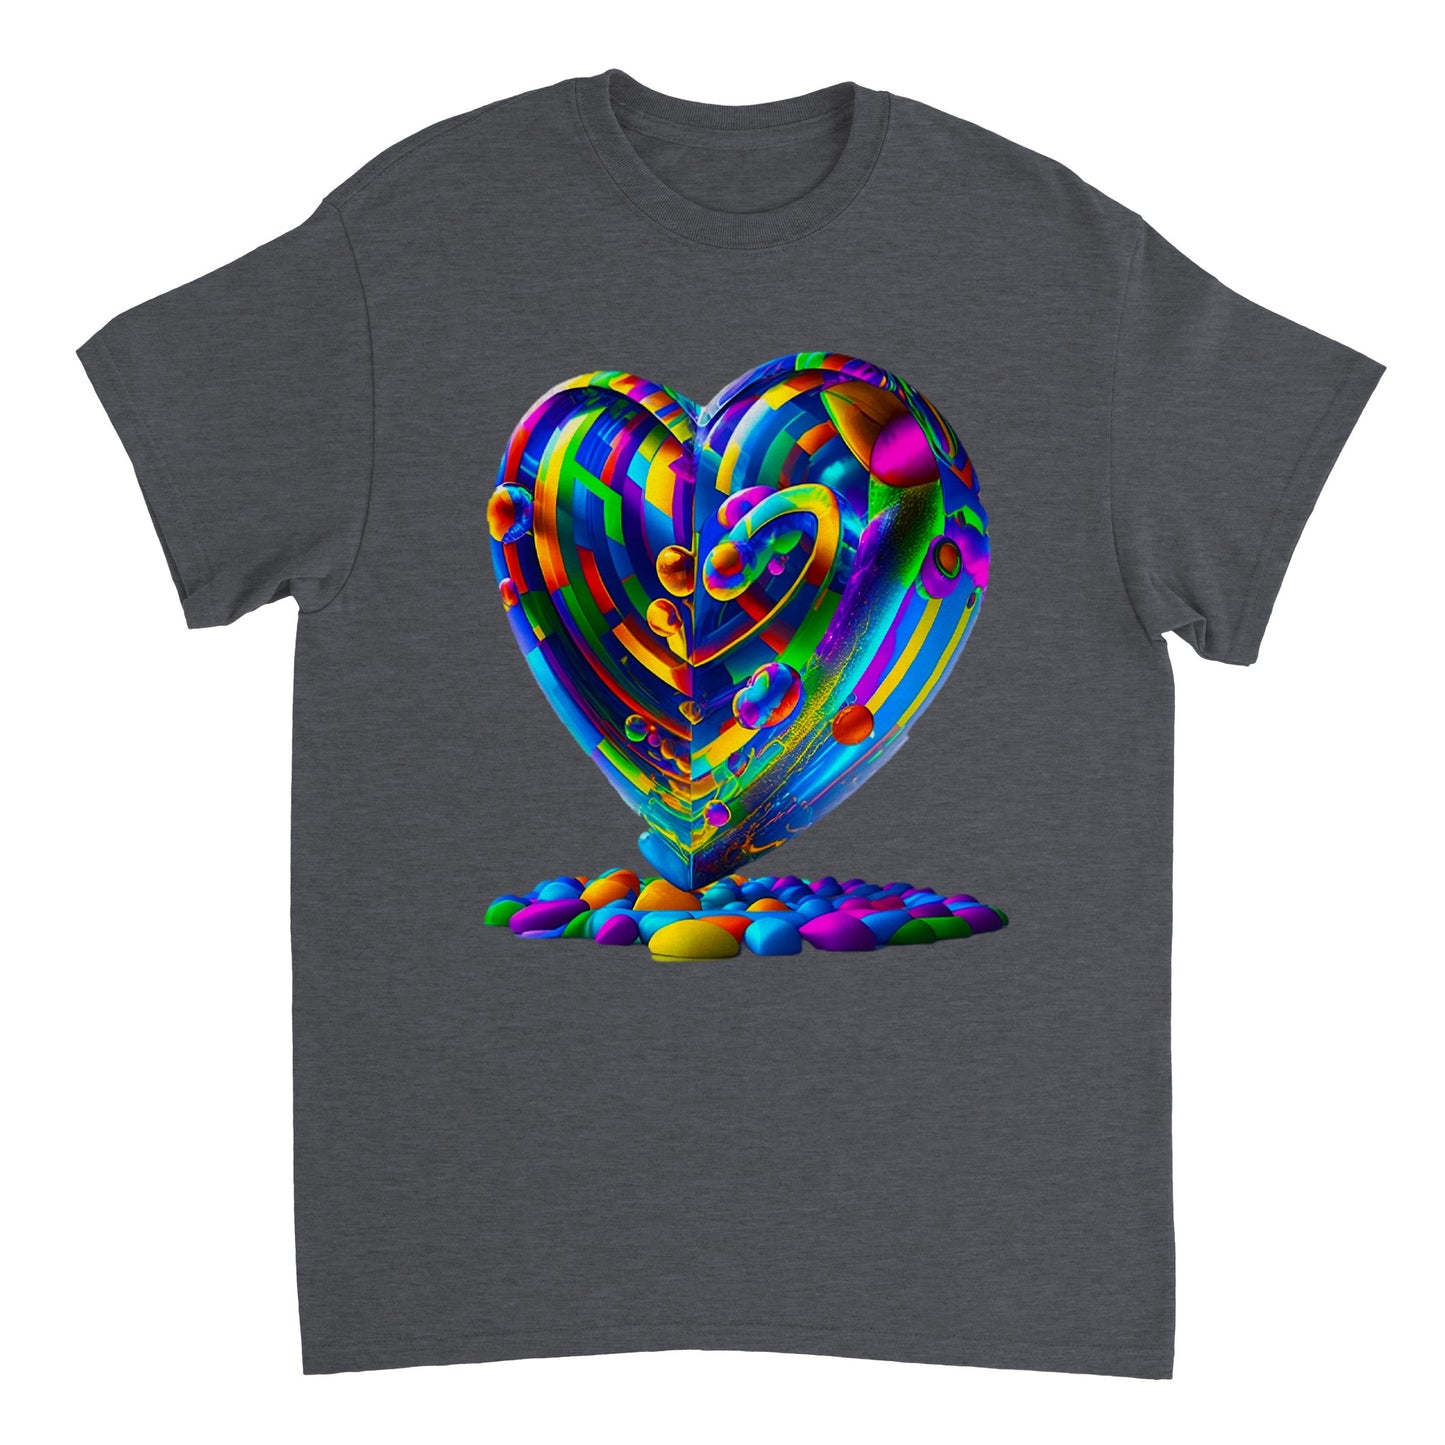 Love Heart - Heavyweight Unisex Crewneck T-shirt 52